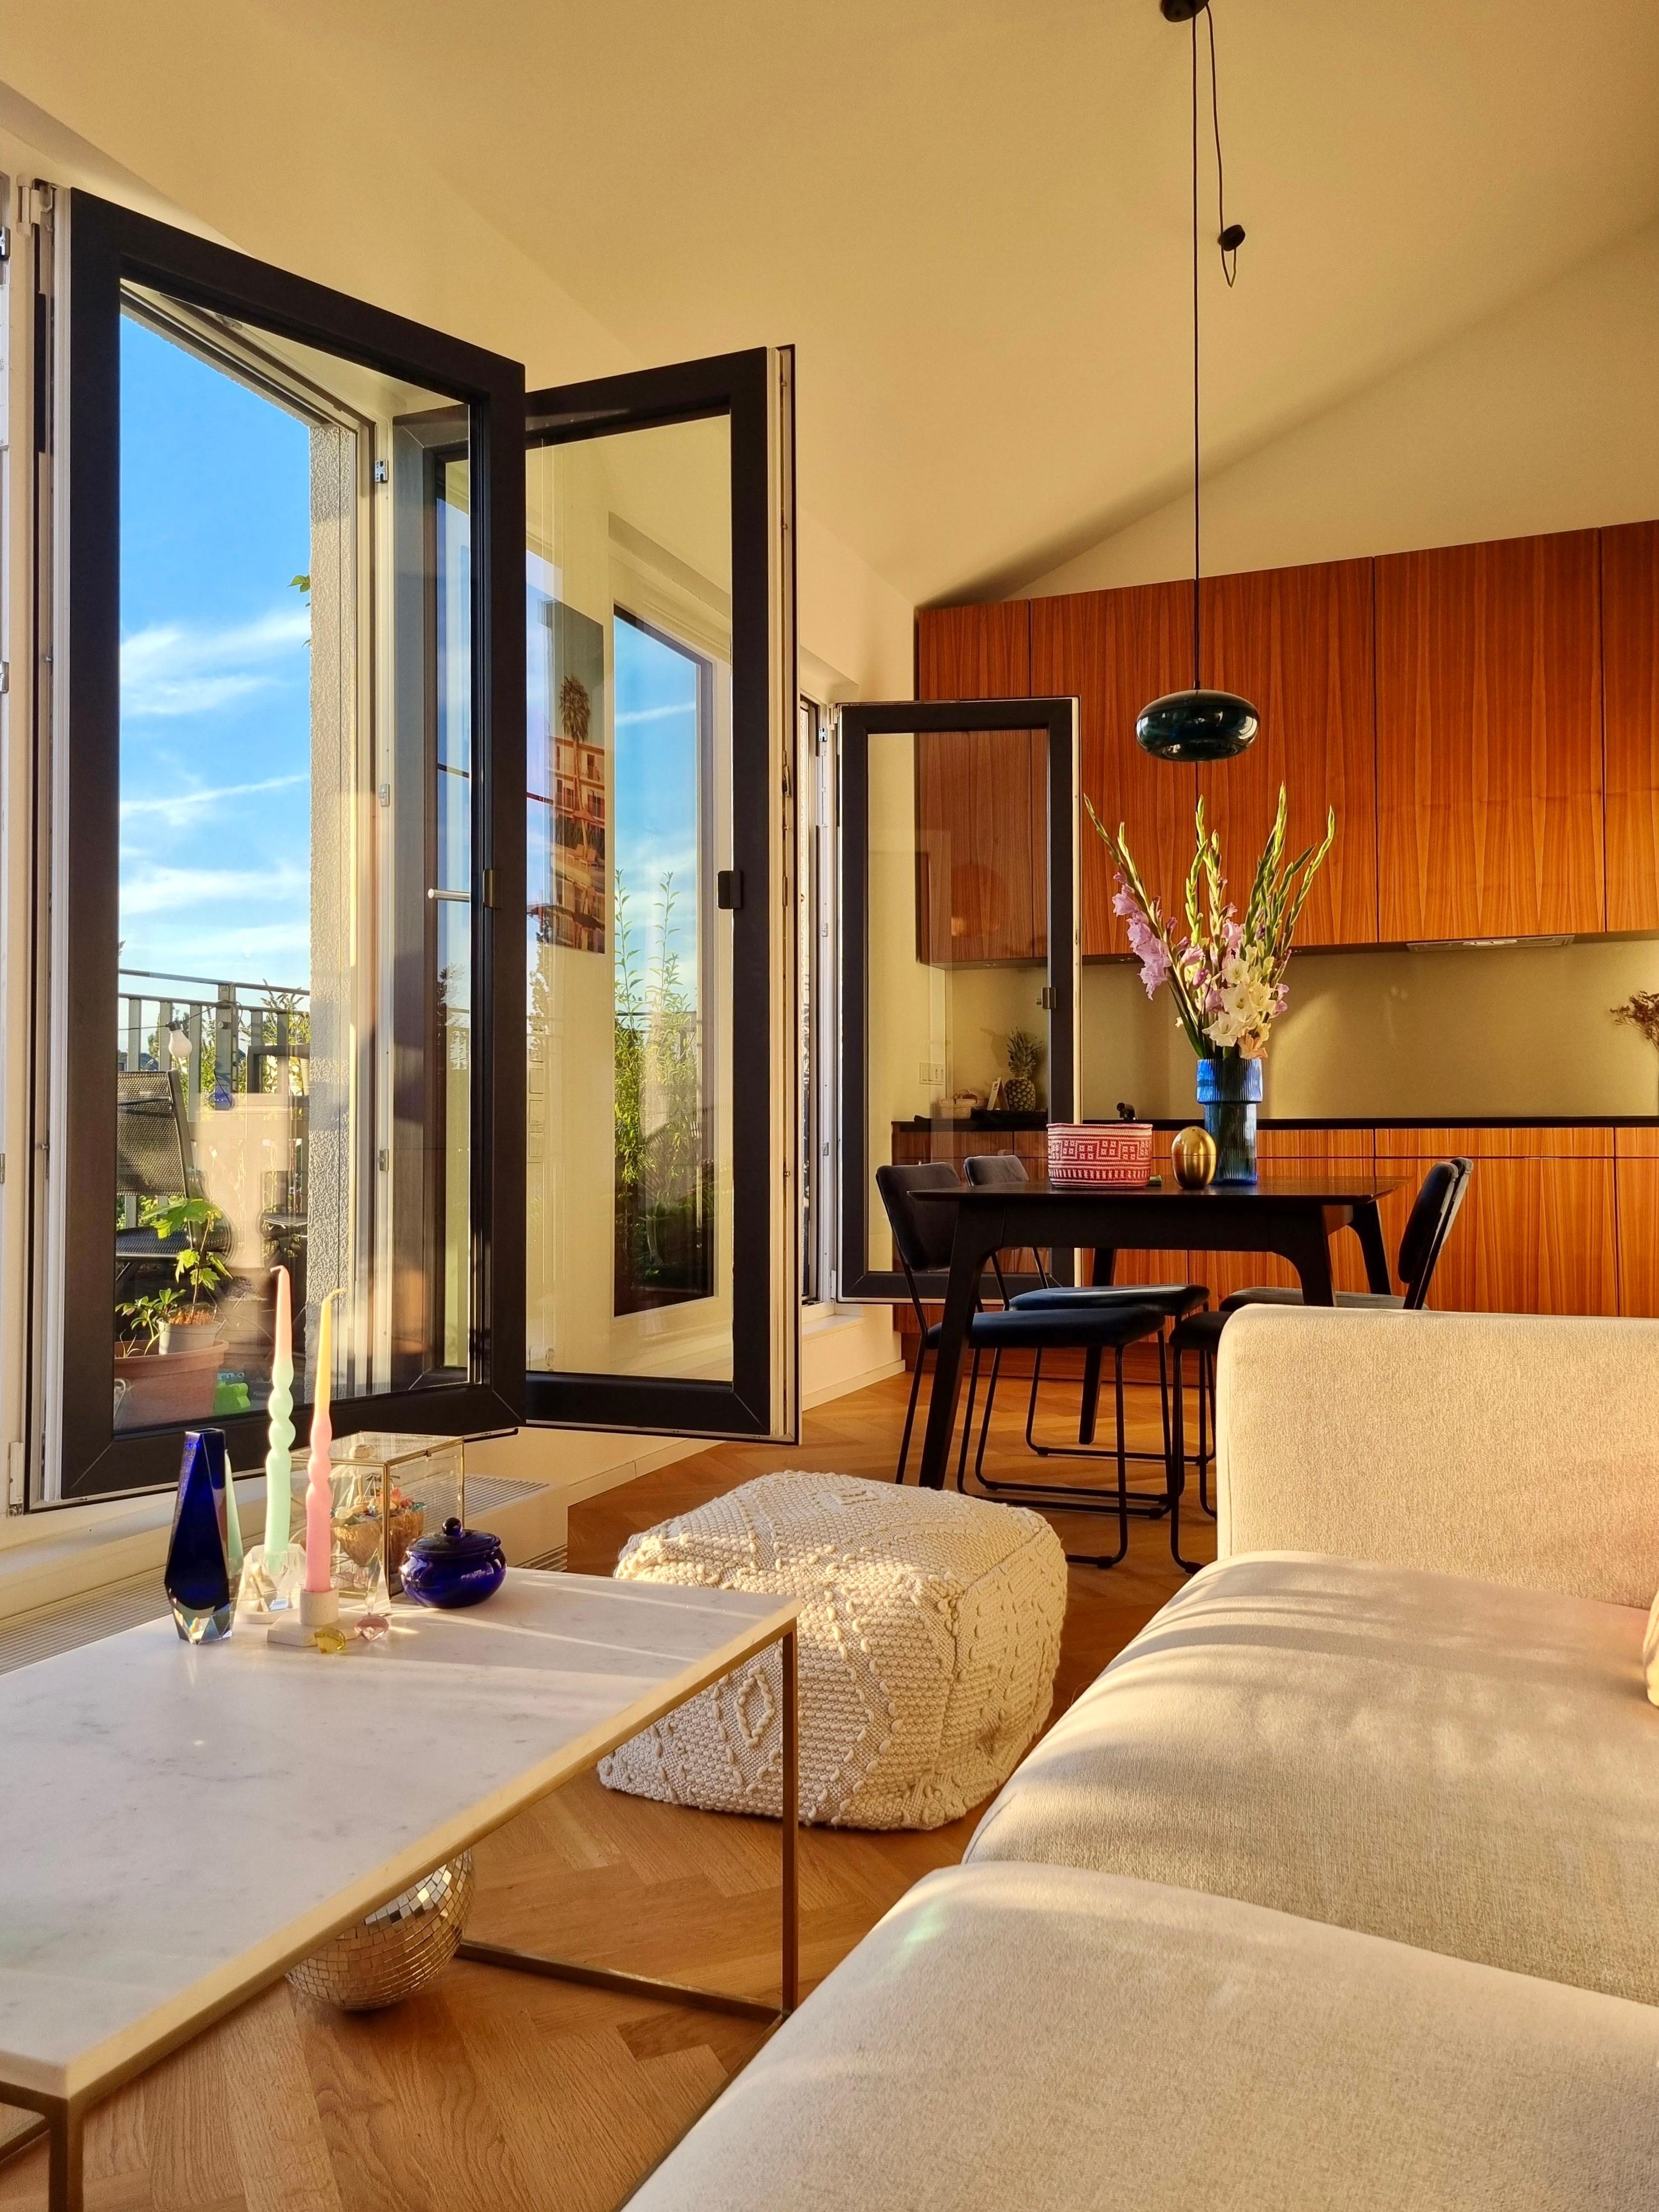 Gladiolenzeit 🥰 #wohnzimmer #Balkon #goldenhour